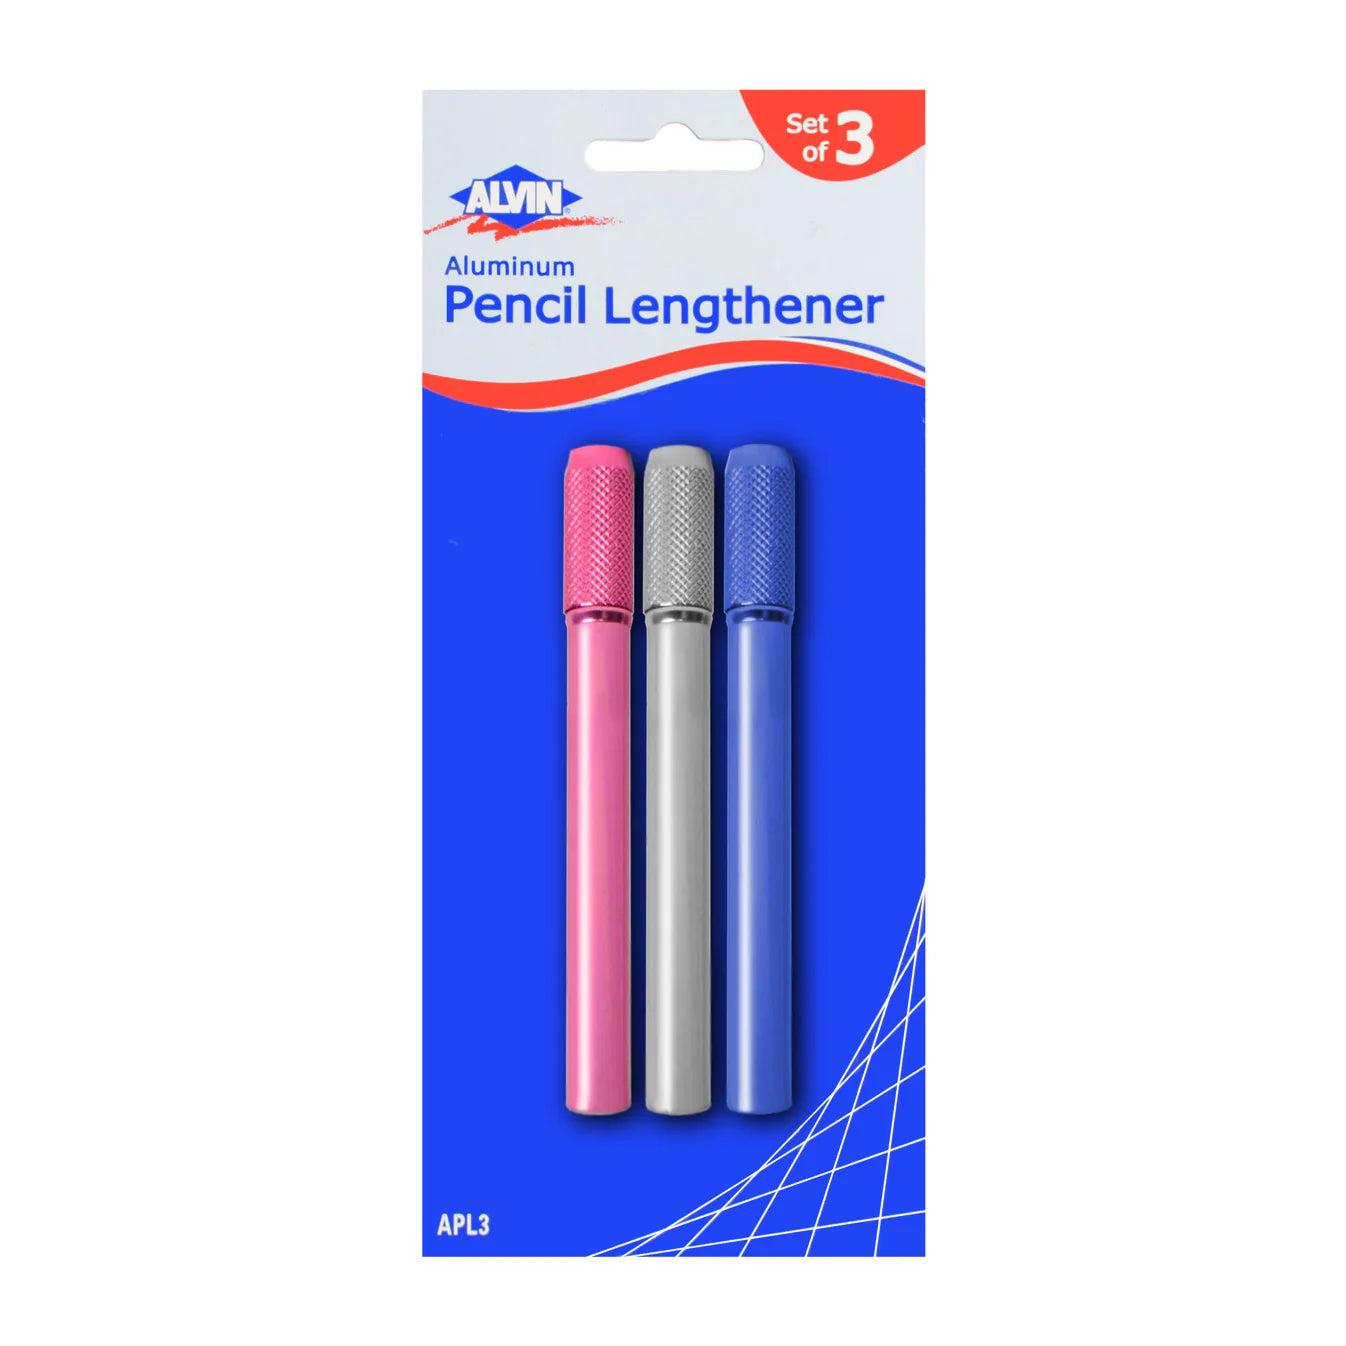 Alvin Aluminum Pencil Lengthener - Individuals